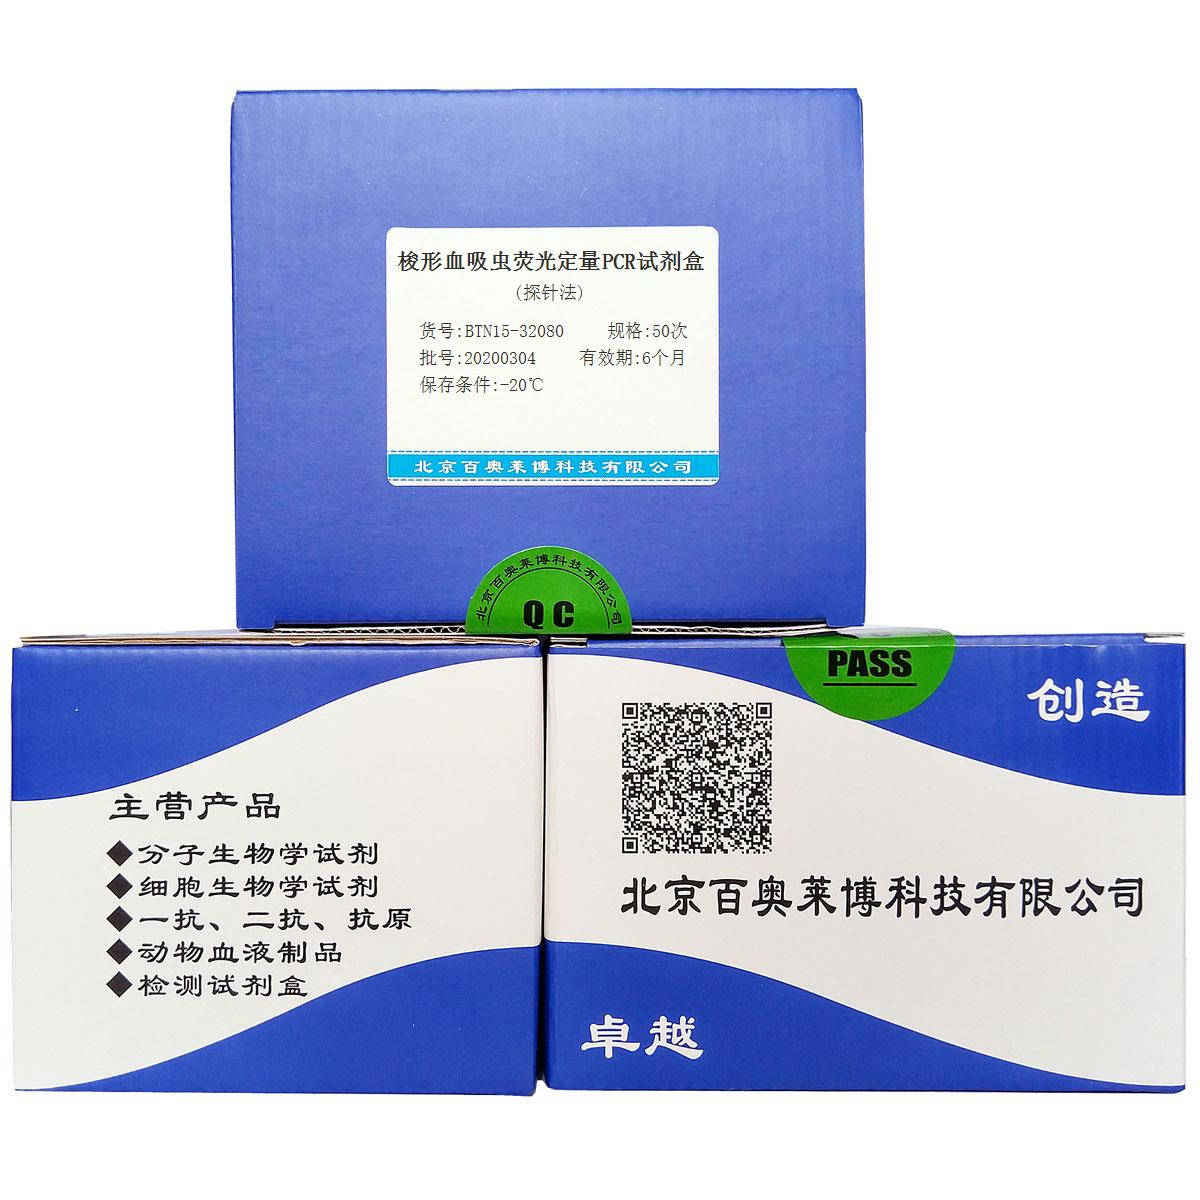 梭形血吸虫荧光定量PCR试剂盒(探针法)